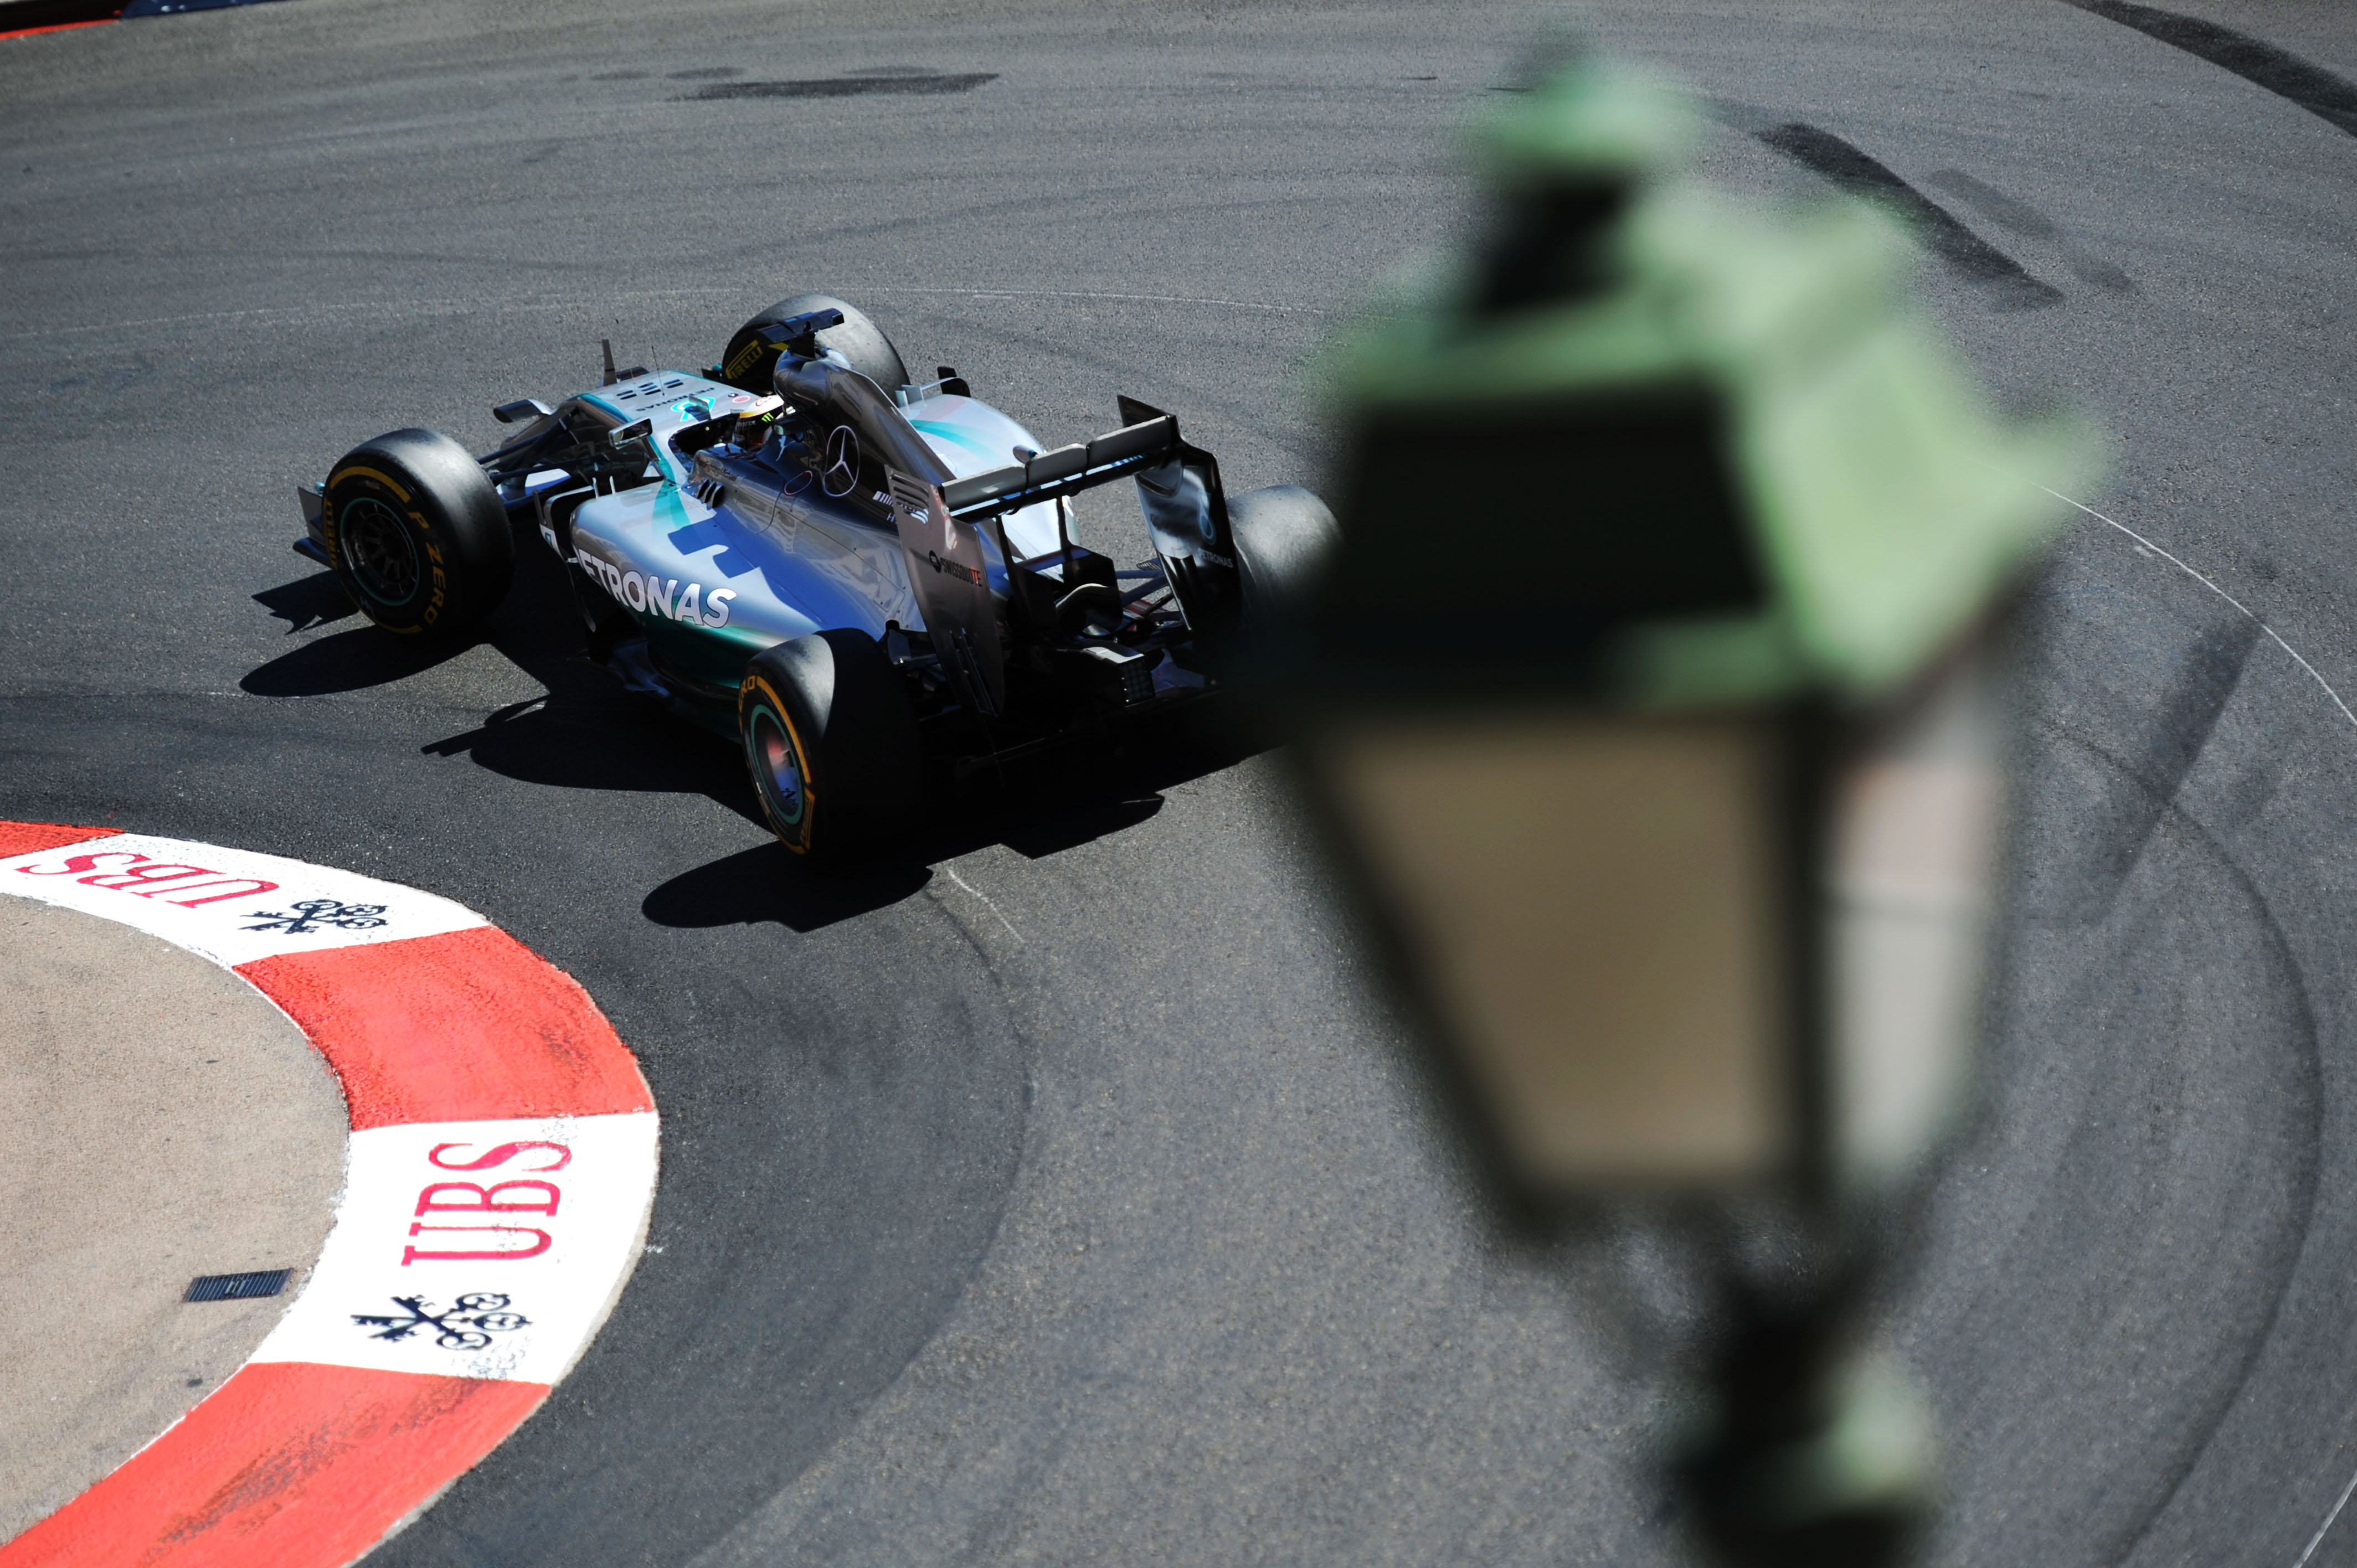 Kwalificatie: Controversiële pole voor Rosberg